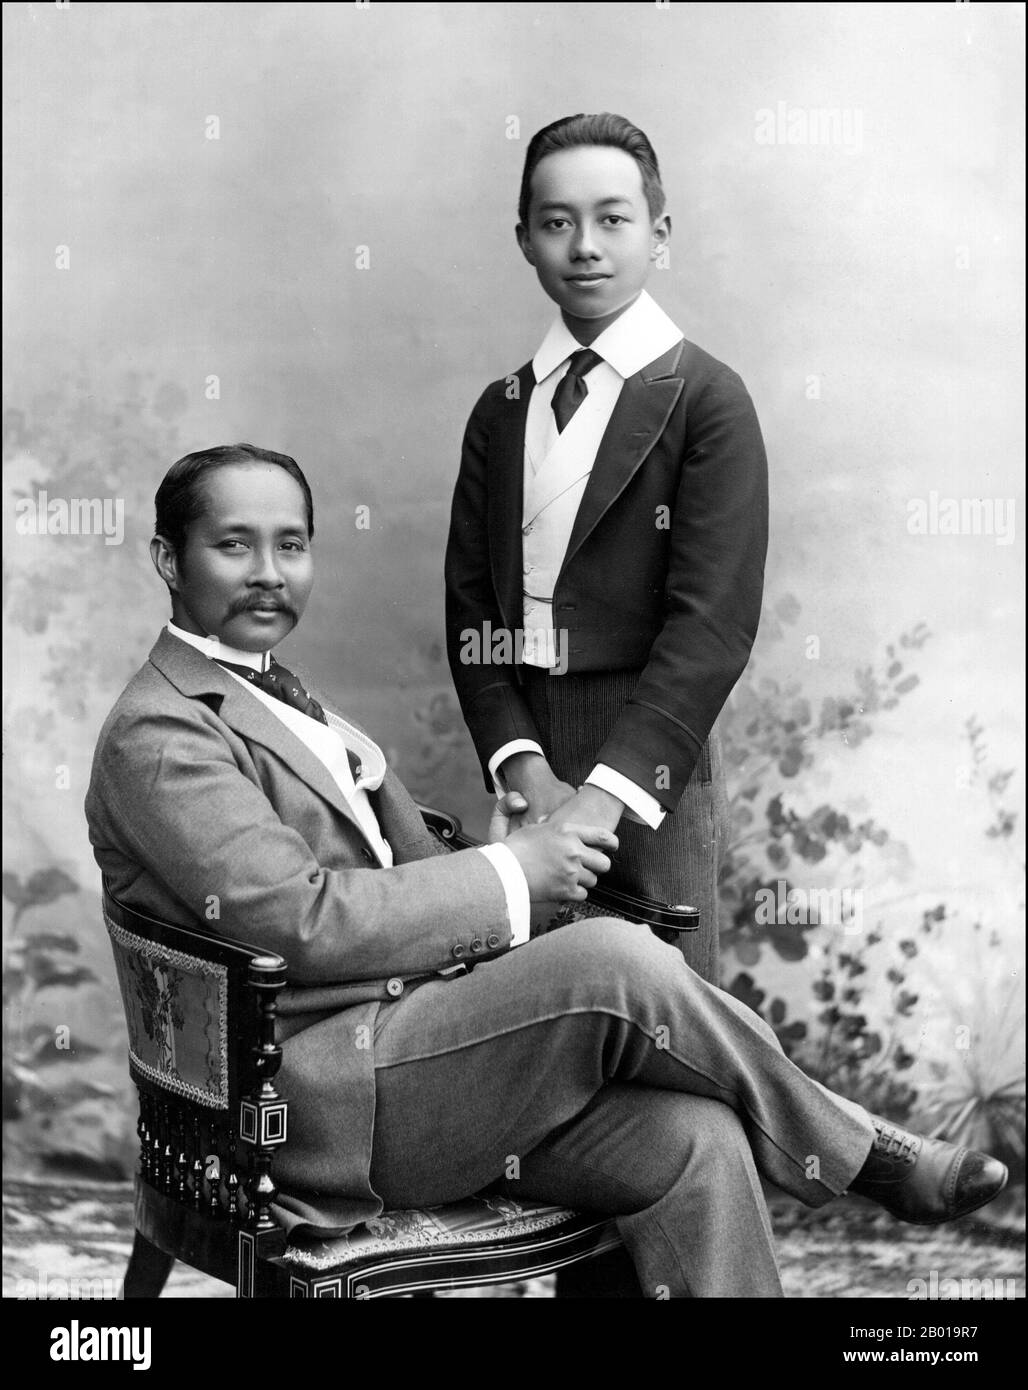 Thaïlande : le roi Chulalongkorn (20 septembre 1853 – 23 octobre 1910) de Siam avec le prince héritier, c. 1890 Phra Bat Somdet Phra Poramintharamaha Chulalongkorn Phra Chunla Chom Klao Chao Yu Hua, ou Rama V, était le cinquième monarque de Siam sous la Maison de Chakri. Il est considéré comme l'un des plus grands rois de Siam. Son règne fut caractérisé par la modernisation de Siam, l'immense gouvernement et les réformes sociales, et les cessions territoriales à l'Empire britannique et à l'Indochine française. Il est vu ici avec le prince héritier, le futur roi Vajiravudh (1881-1925). Banque D'Images